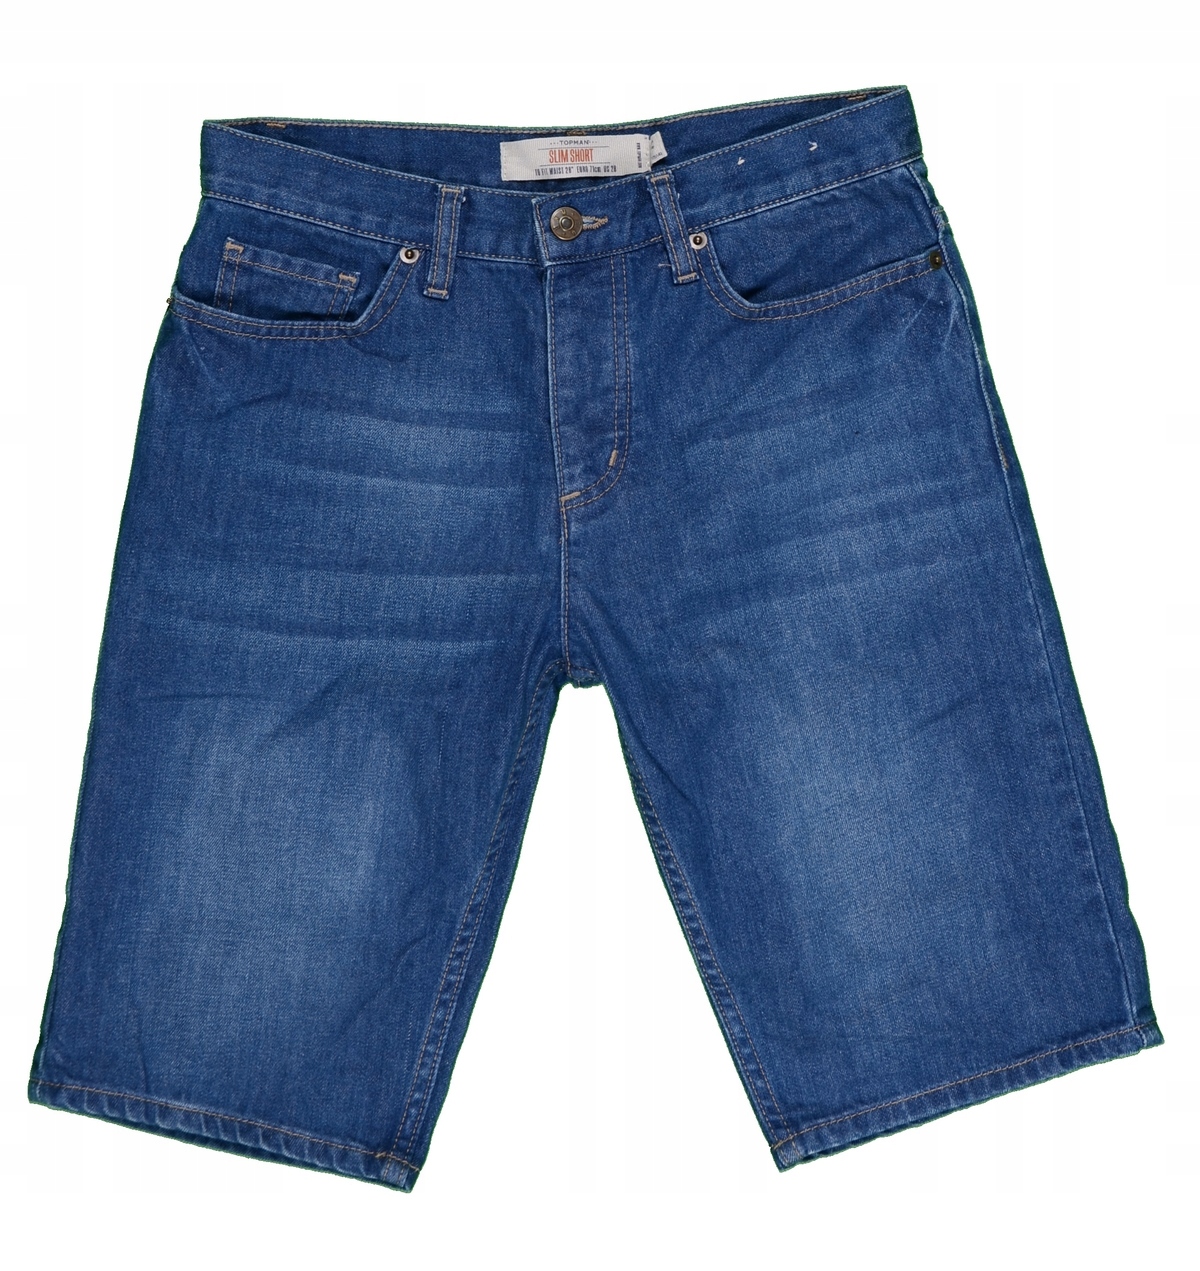 TOPMAN krótkie spodenki męskie jeansowe W28